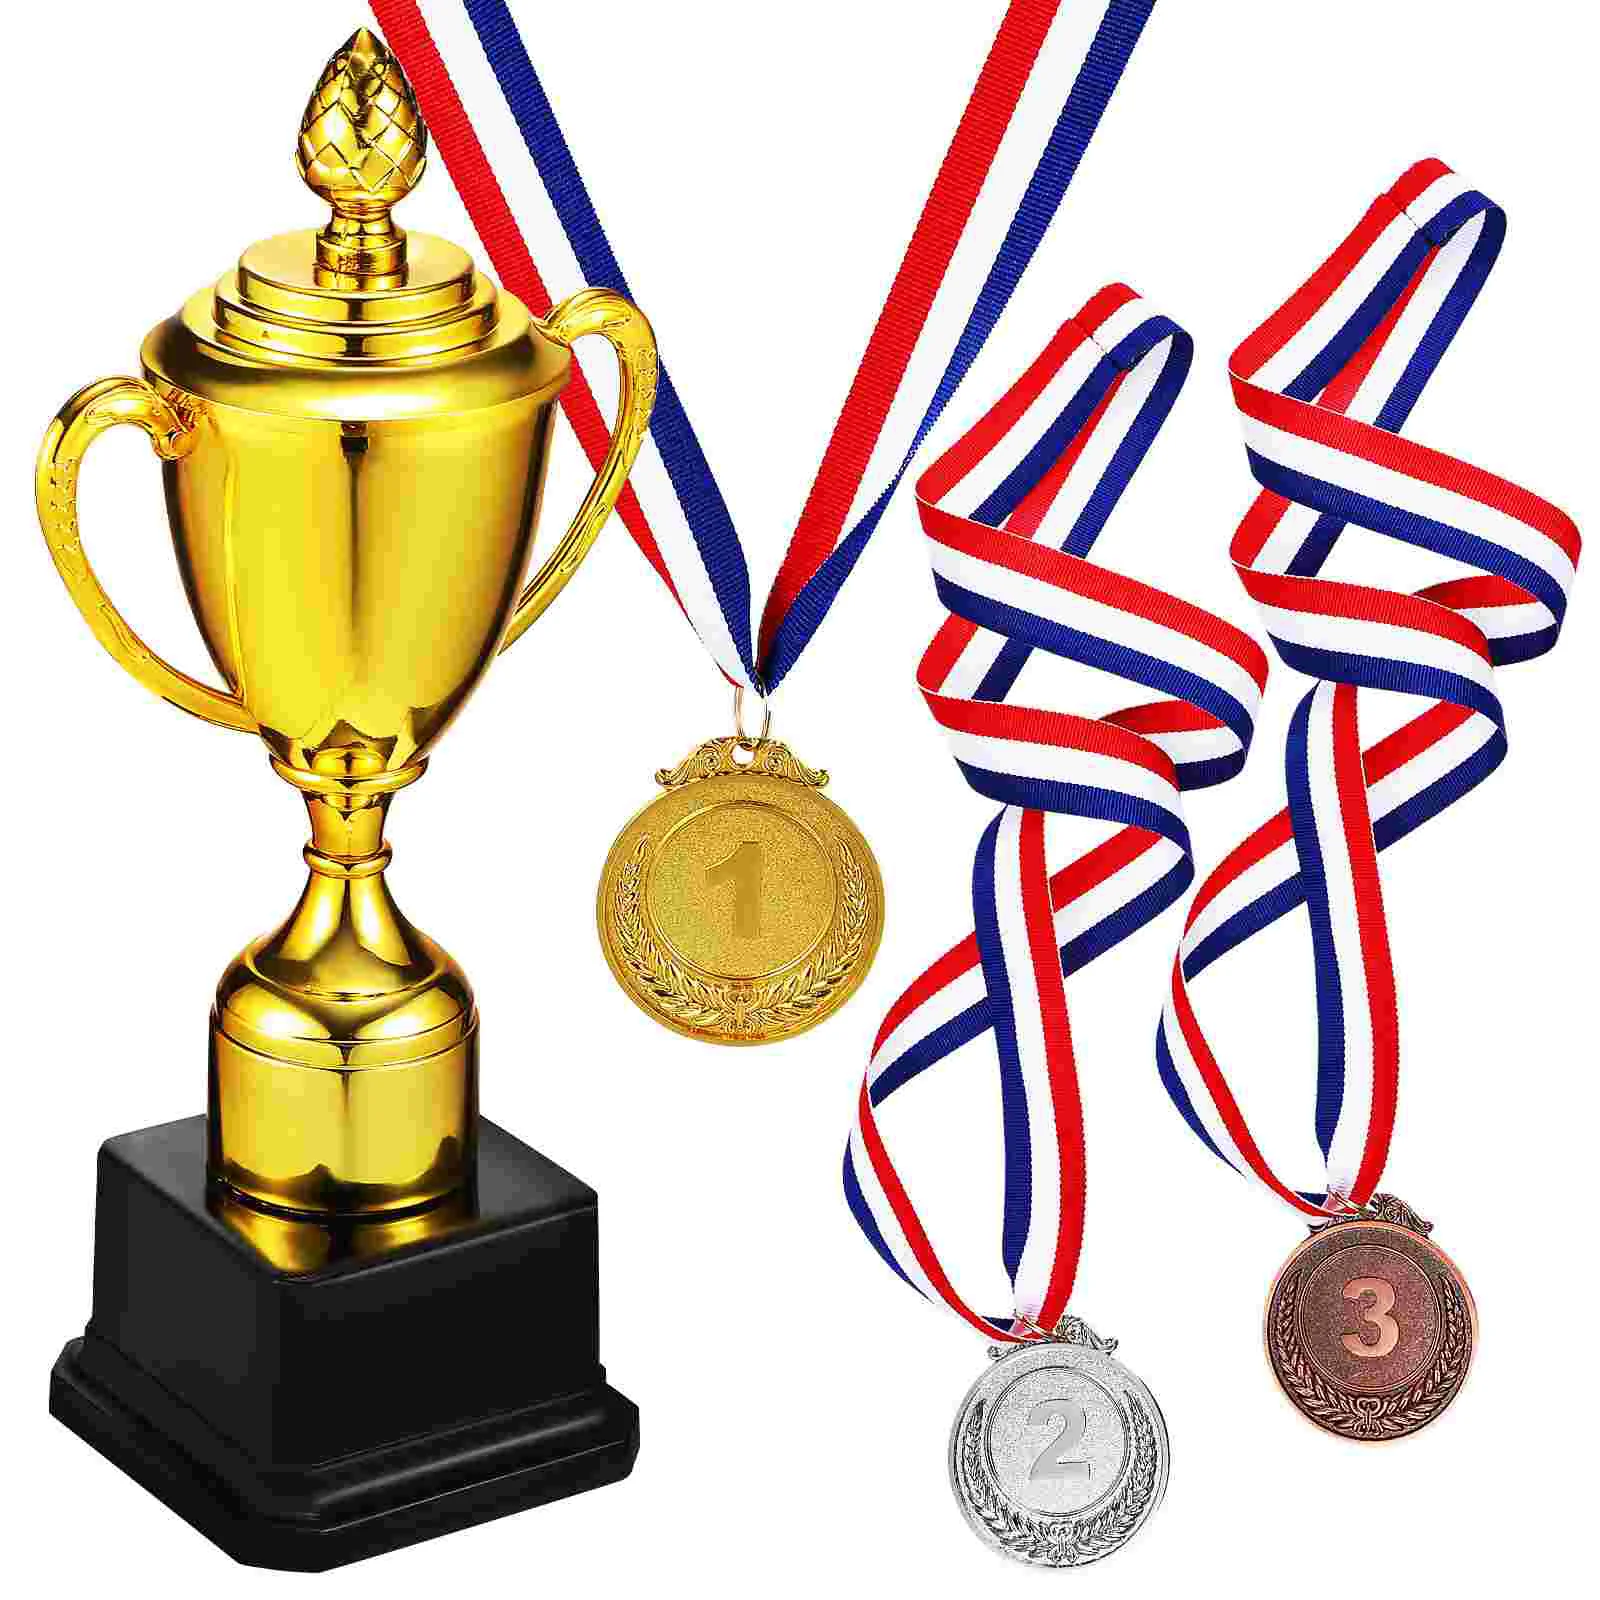 

Наградный трофей, наградный трофей, призовой Кубок, игрушка с 3 медалями для спортивного события, игровой трофей